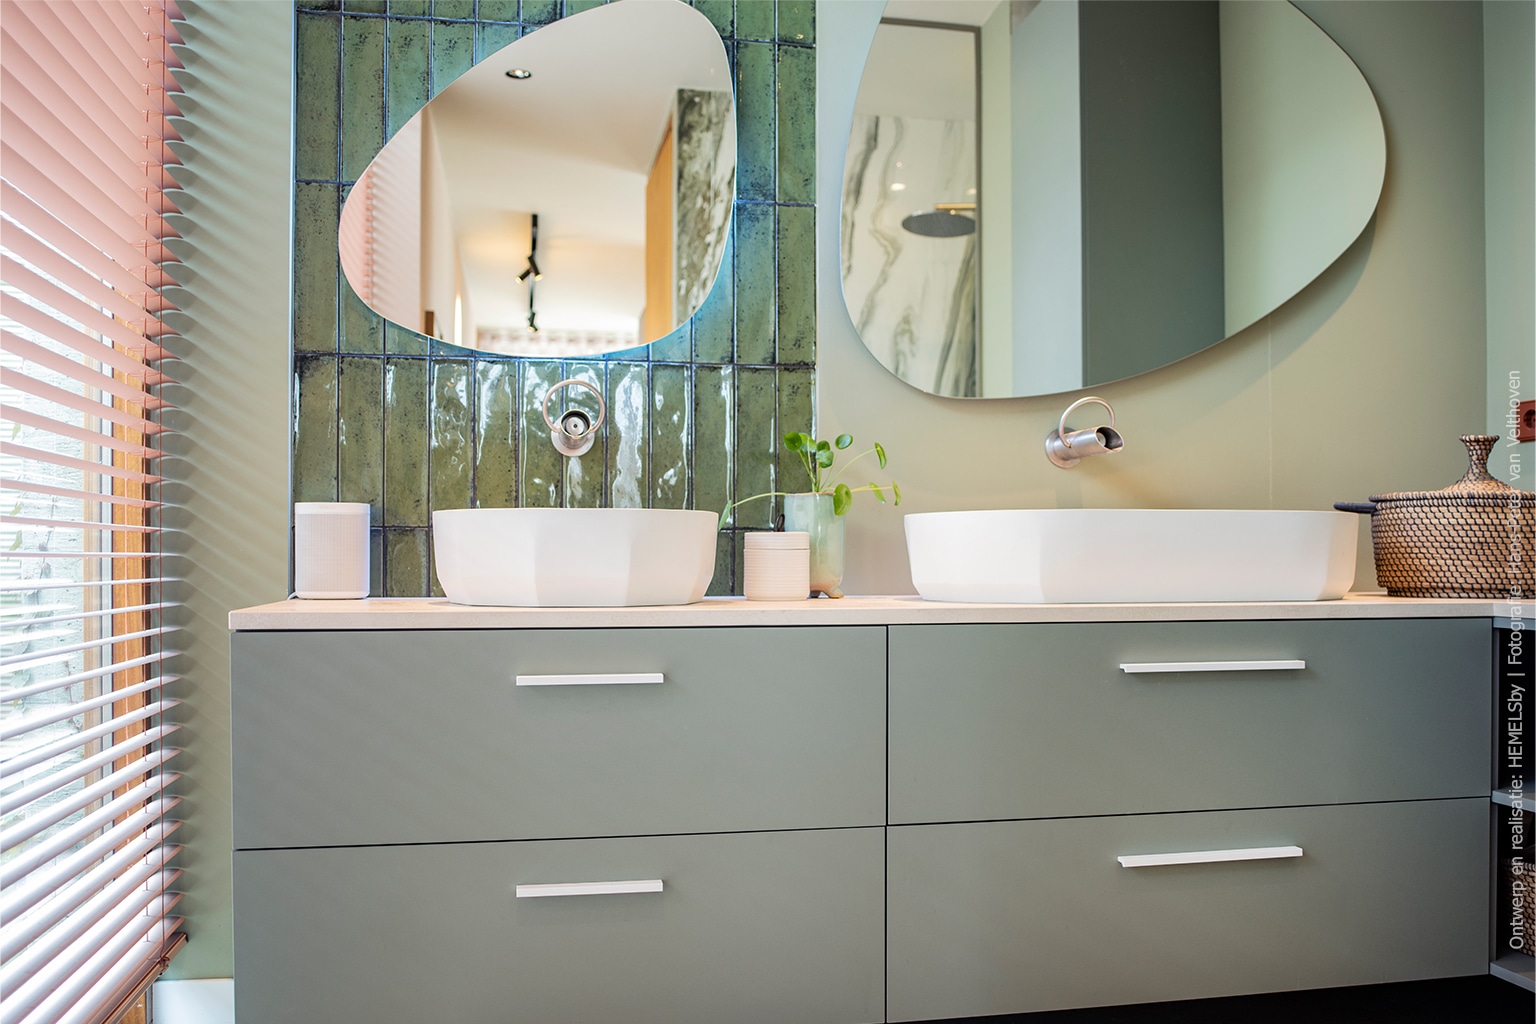 Badkamer in lichtgroen UB25 Ovatta met twee spiegels